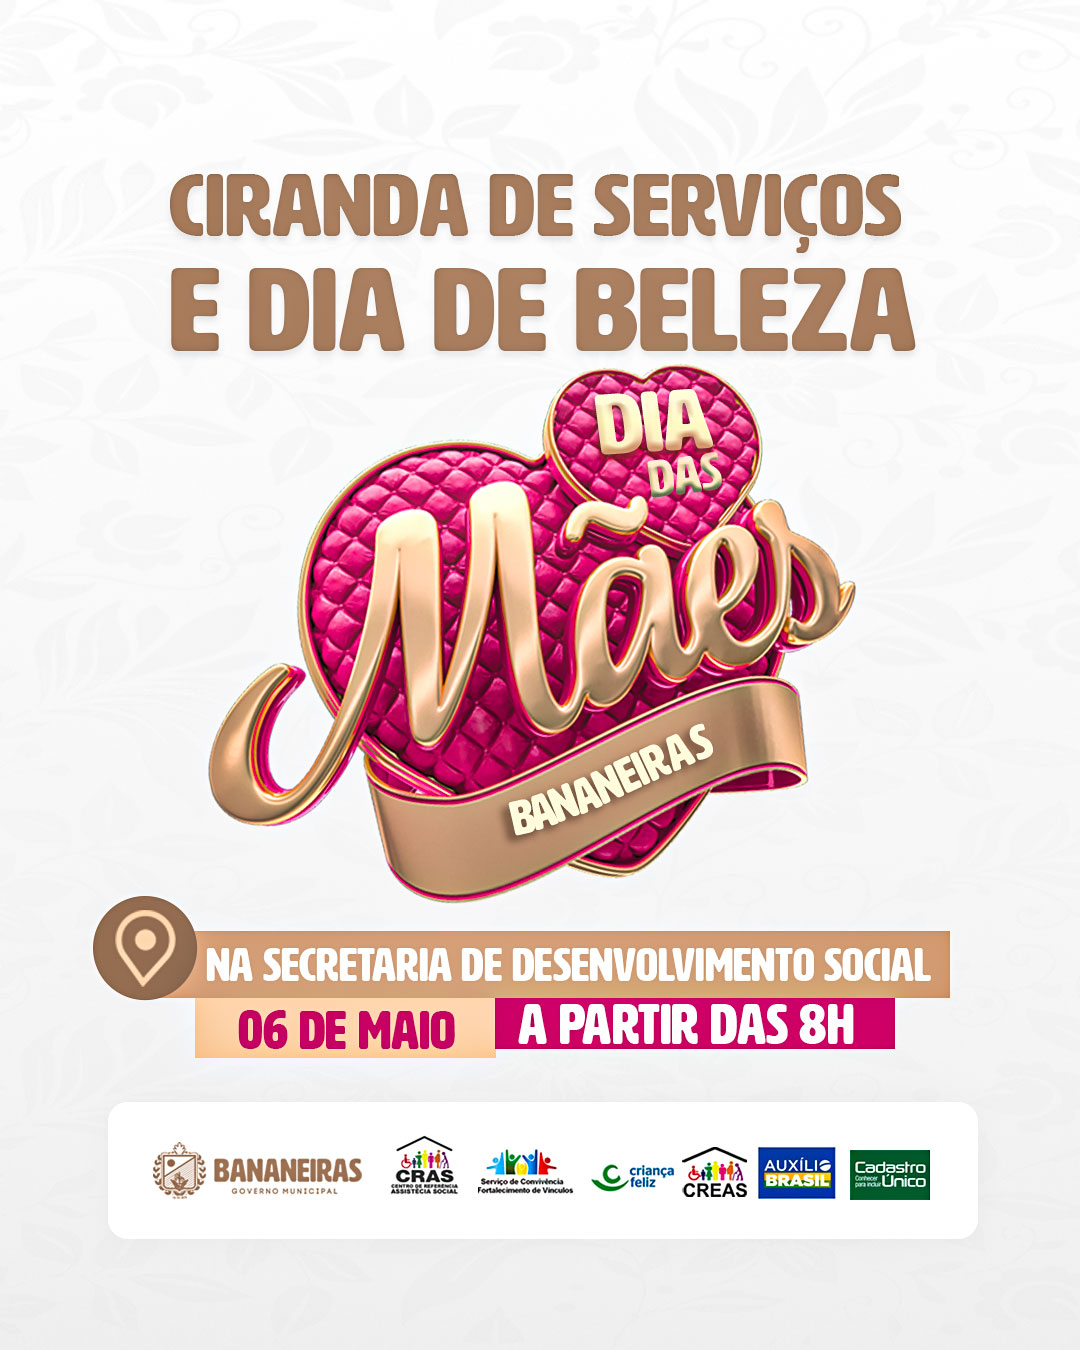 Ciranda de Serviços e Dia de Beleza será realizado em Bananeiras em comemoração ao dia das mães